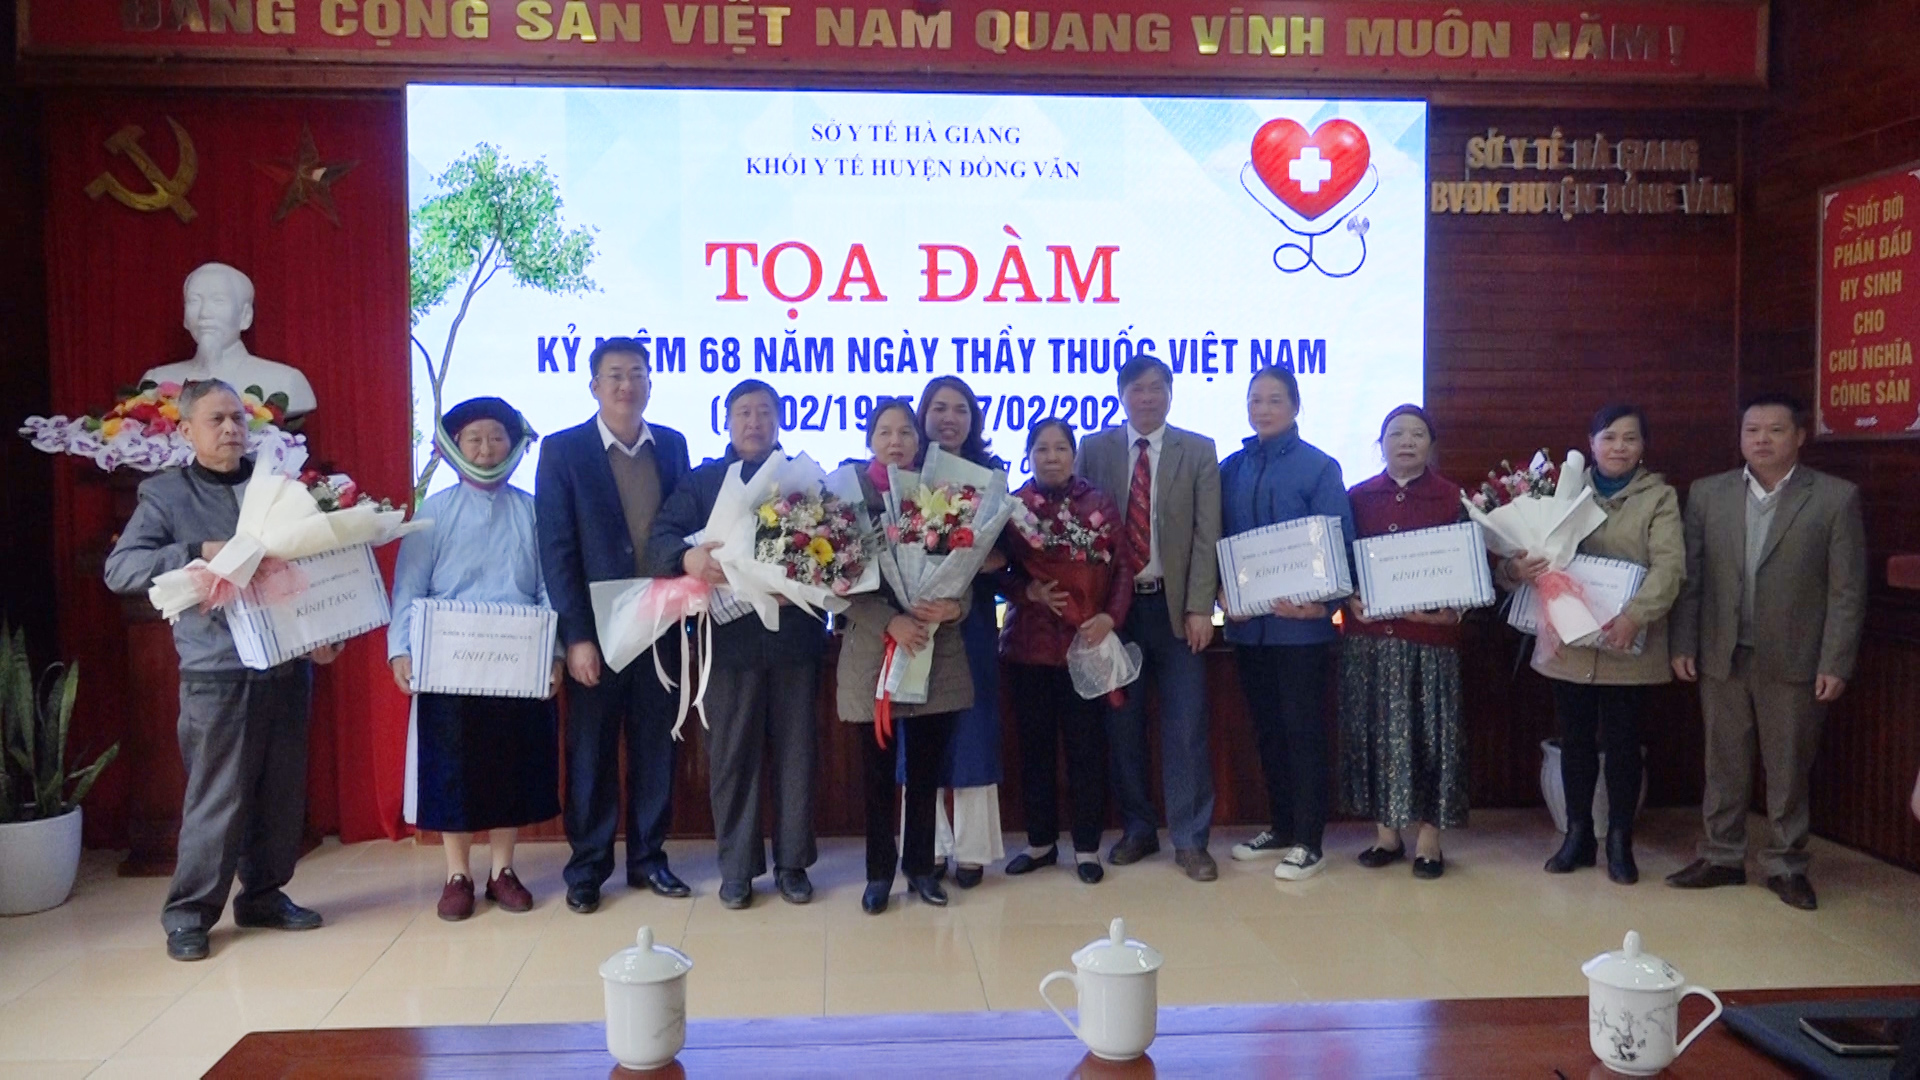 Bệnh viện huyện Đồng Văn tổ chức buổi tọa đàm chào mừng ngày thầy thuốc Việt Nam